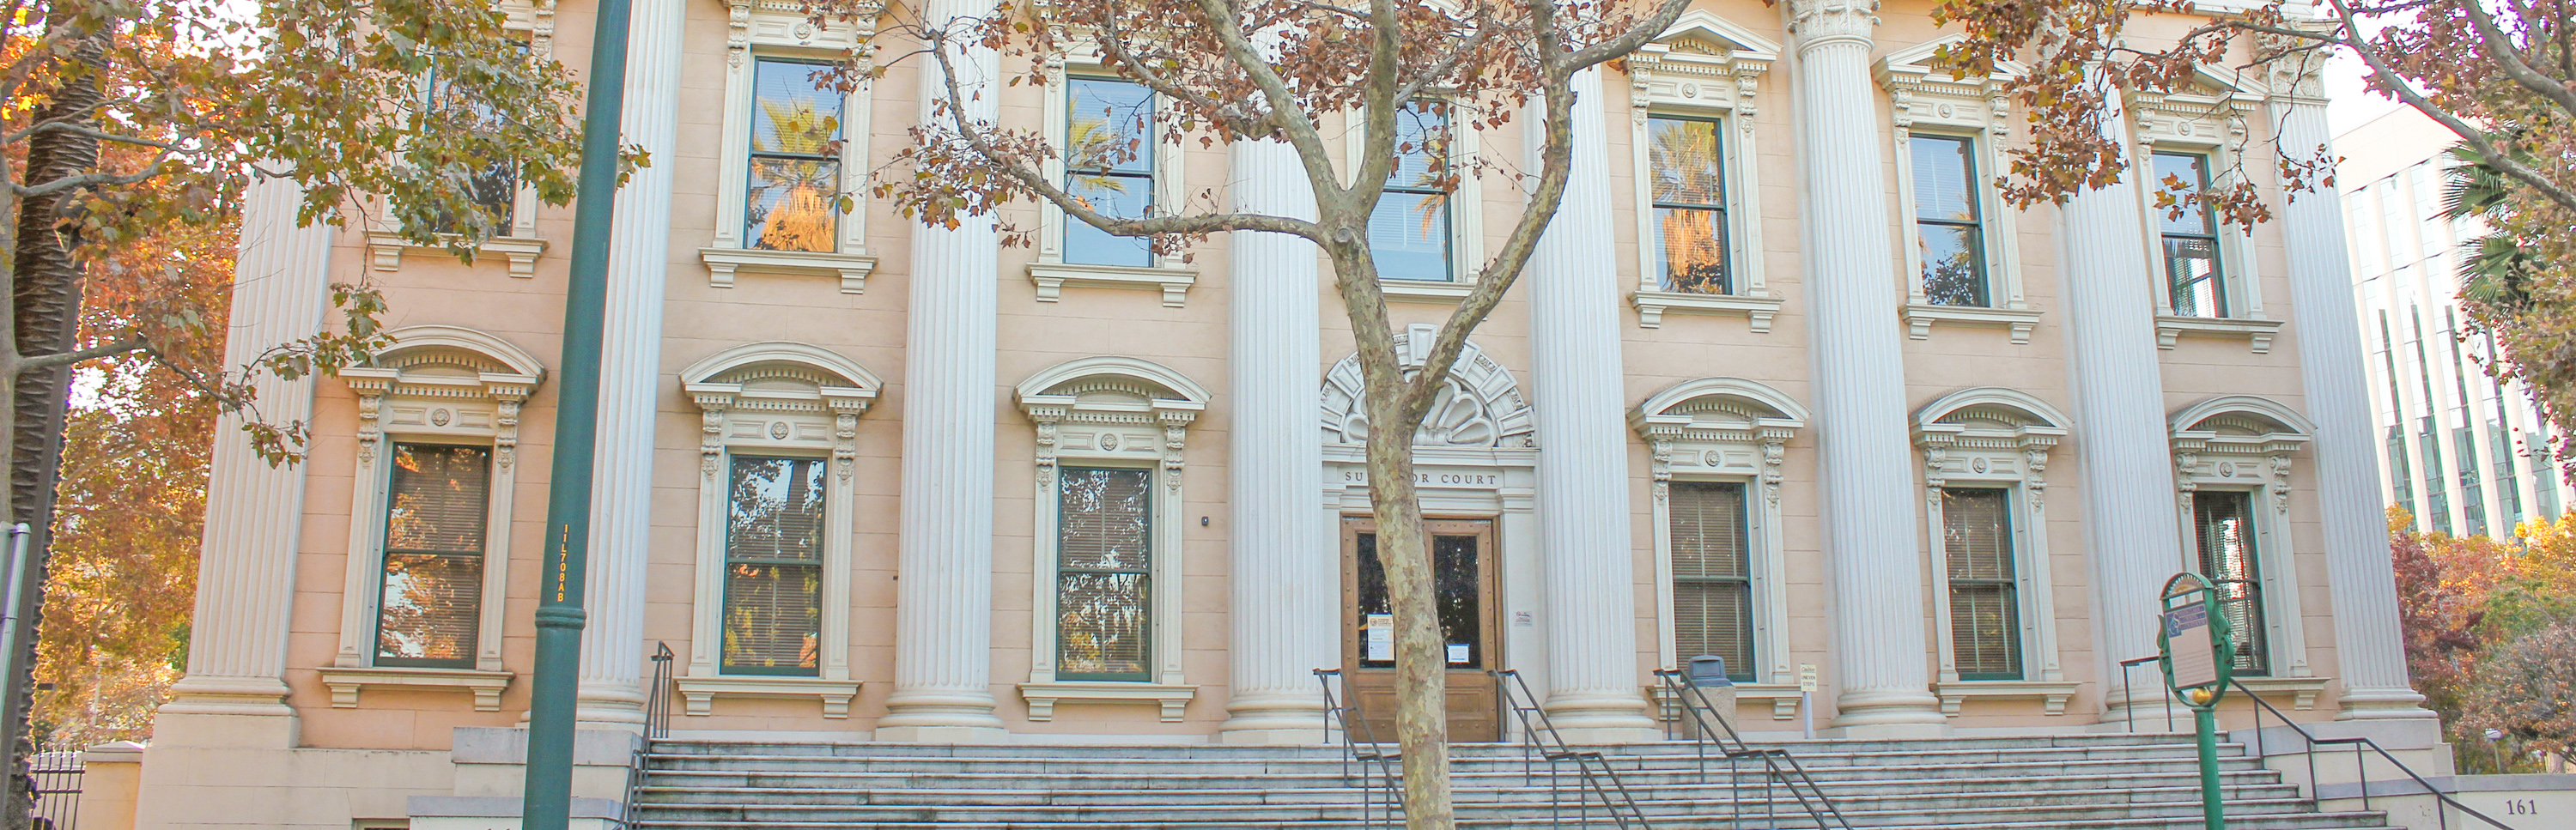 Santa Clara Courthouse